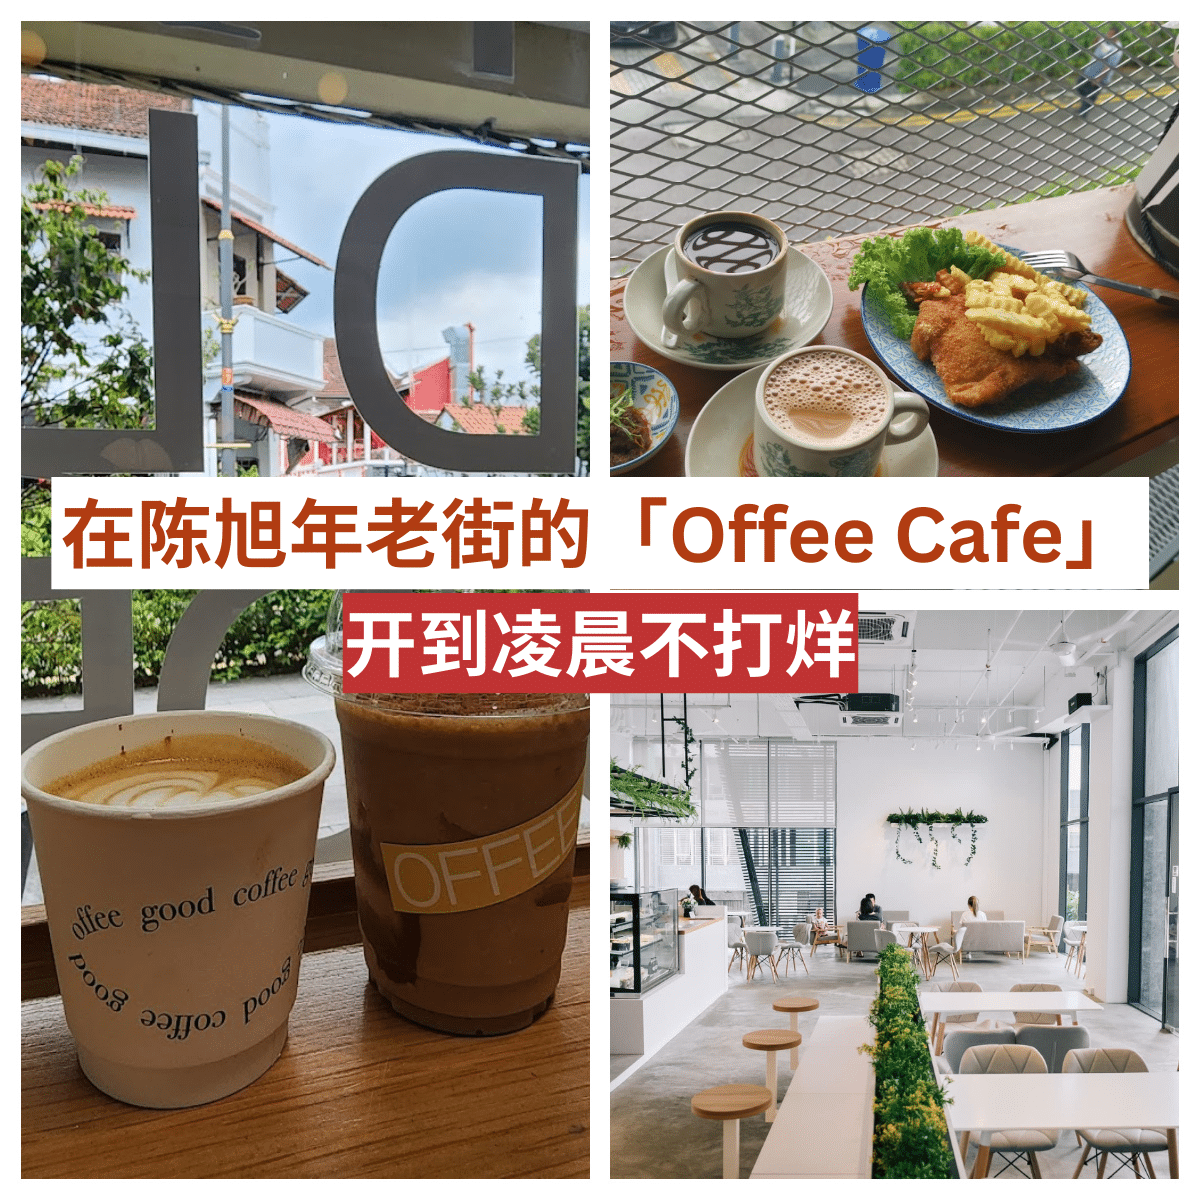 “不只是一杯专业调制的咖啡， Offee Cafe是陈旭年老街上的历史与现代交汇点！”